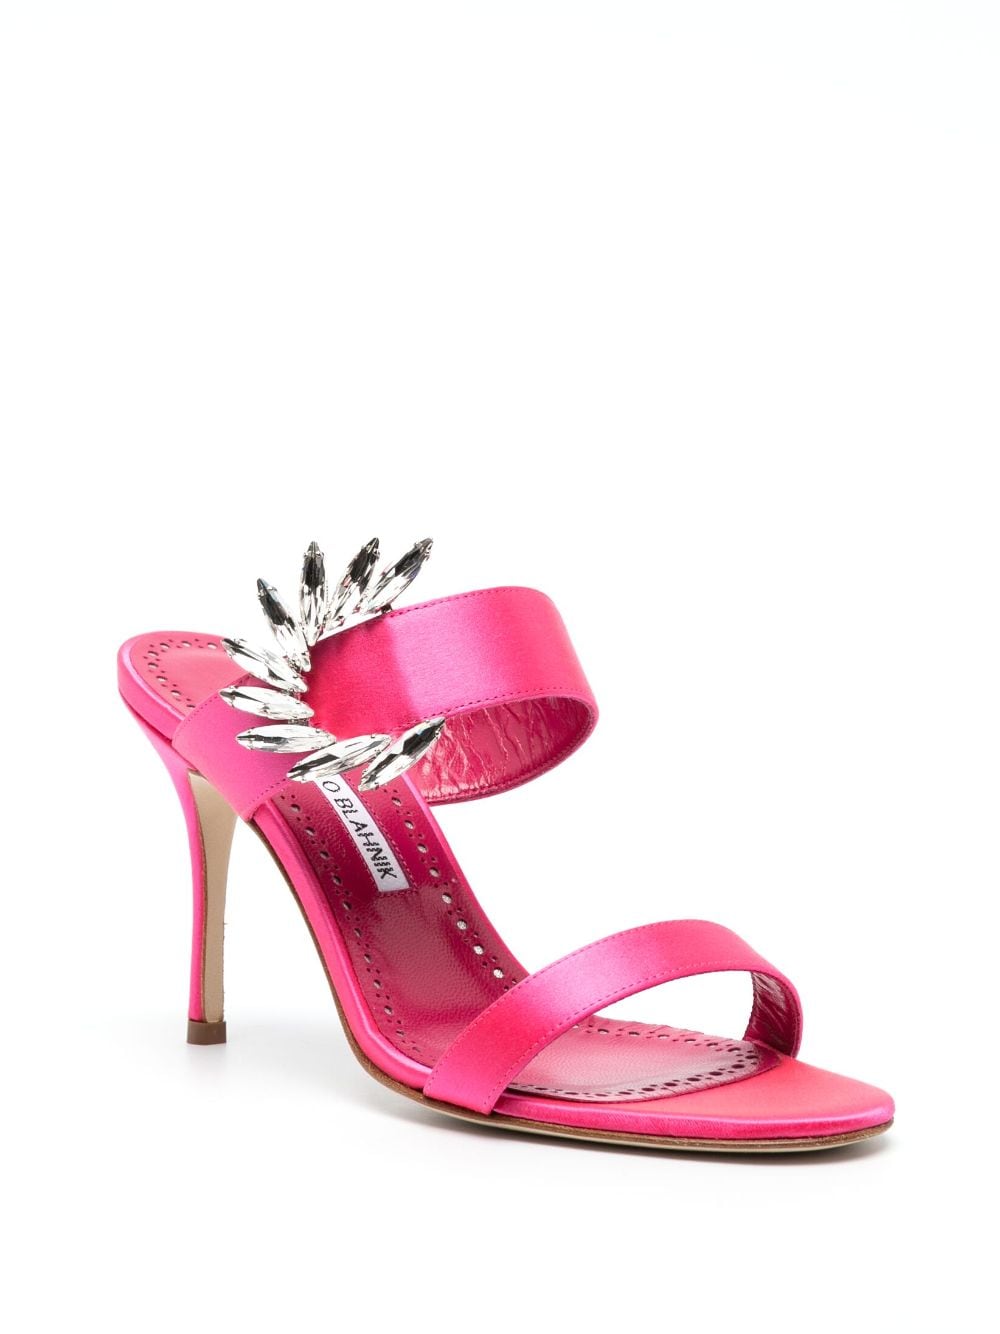 manolo blahnik 100mm crystal-embellished sandals - pink